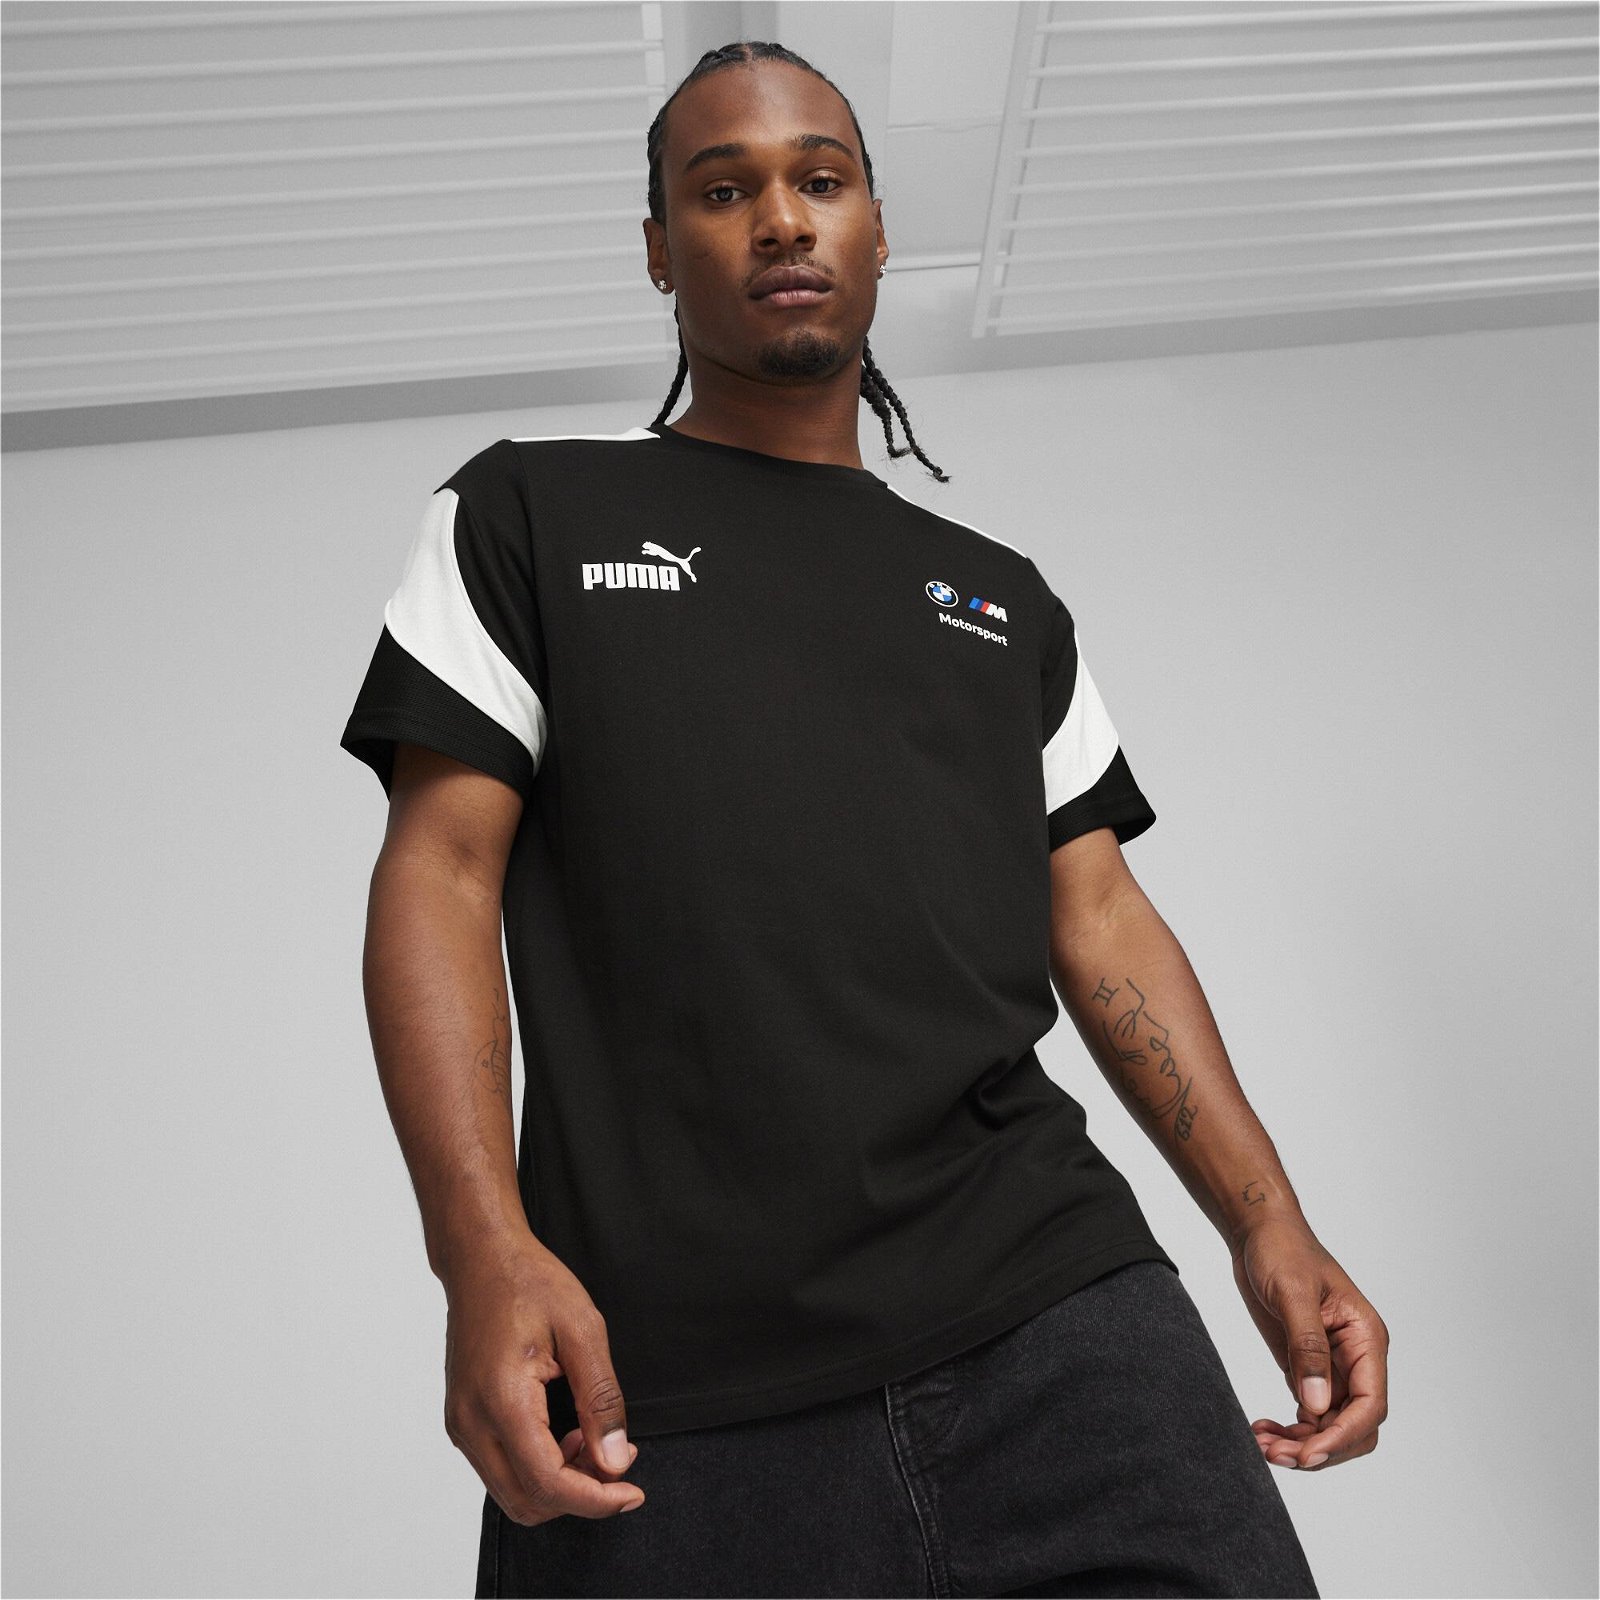 Puma Motorsport MT7 Erkek Siyah T-Shirt